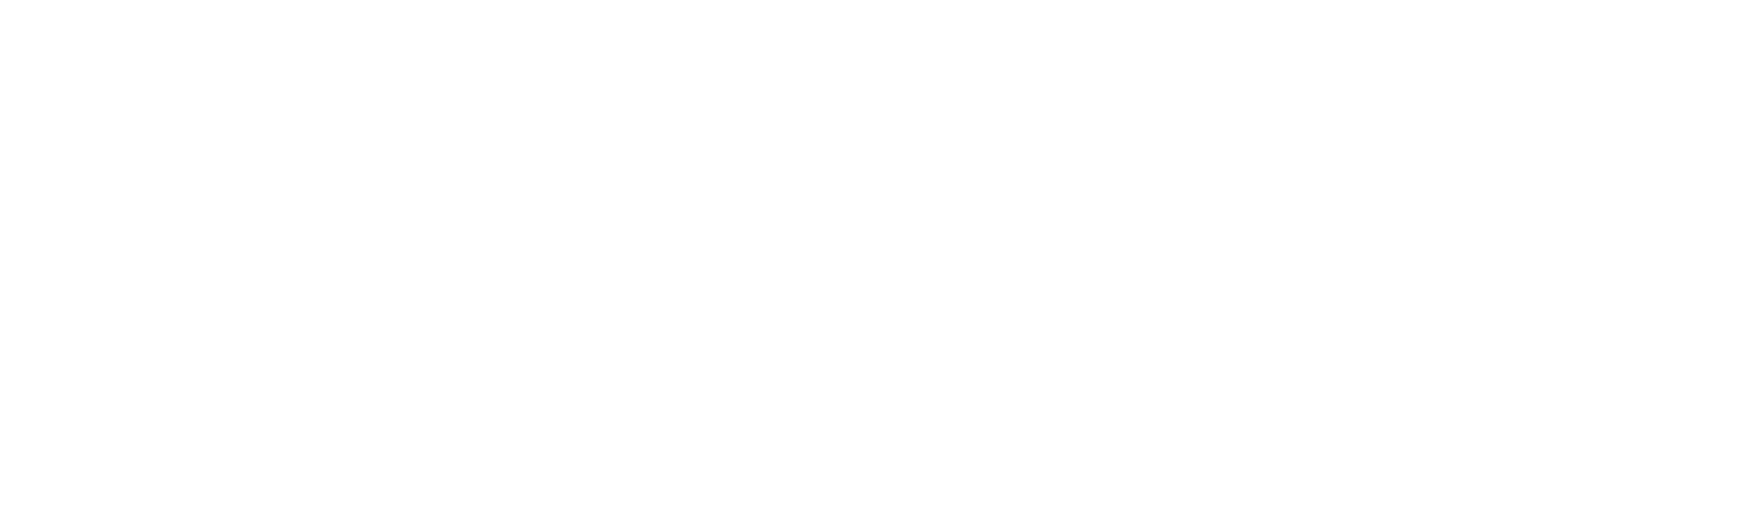 Evangelische Kirchengemeinde Weisweiler-Dürwiß